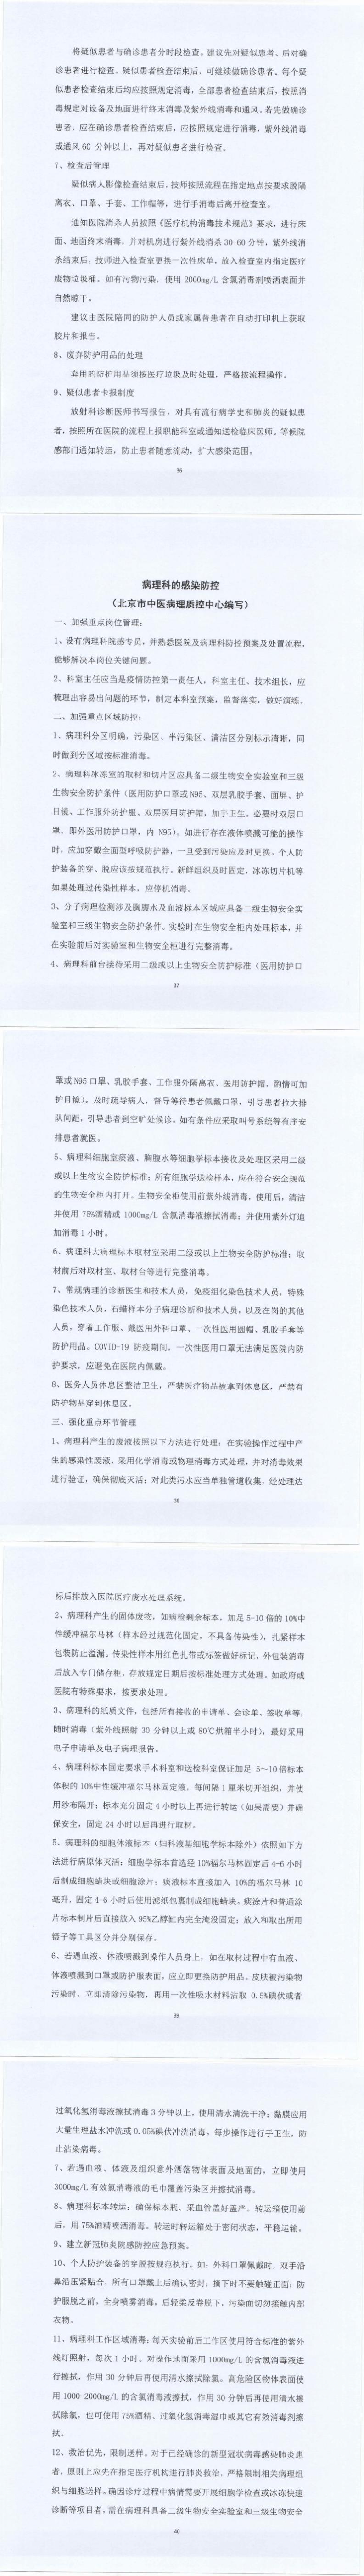 关于北京市中医医疗机构感染防控的指意见_36-40_0.jpg